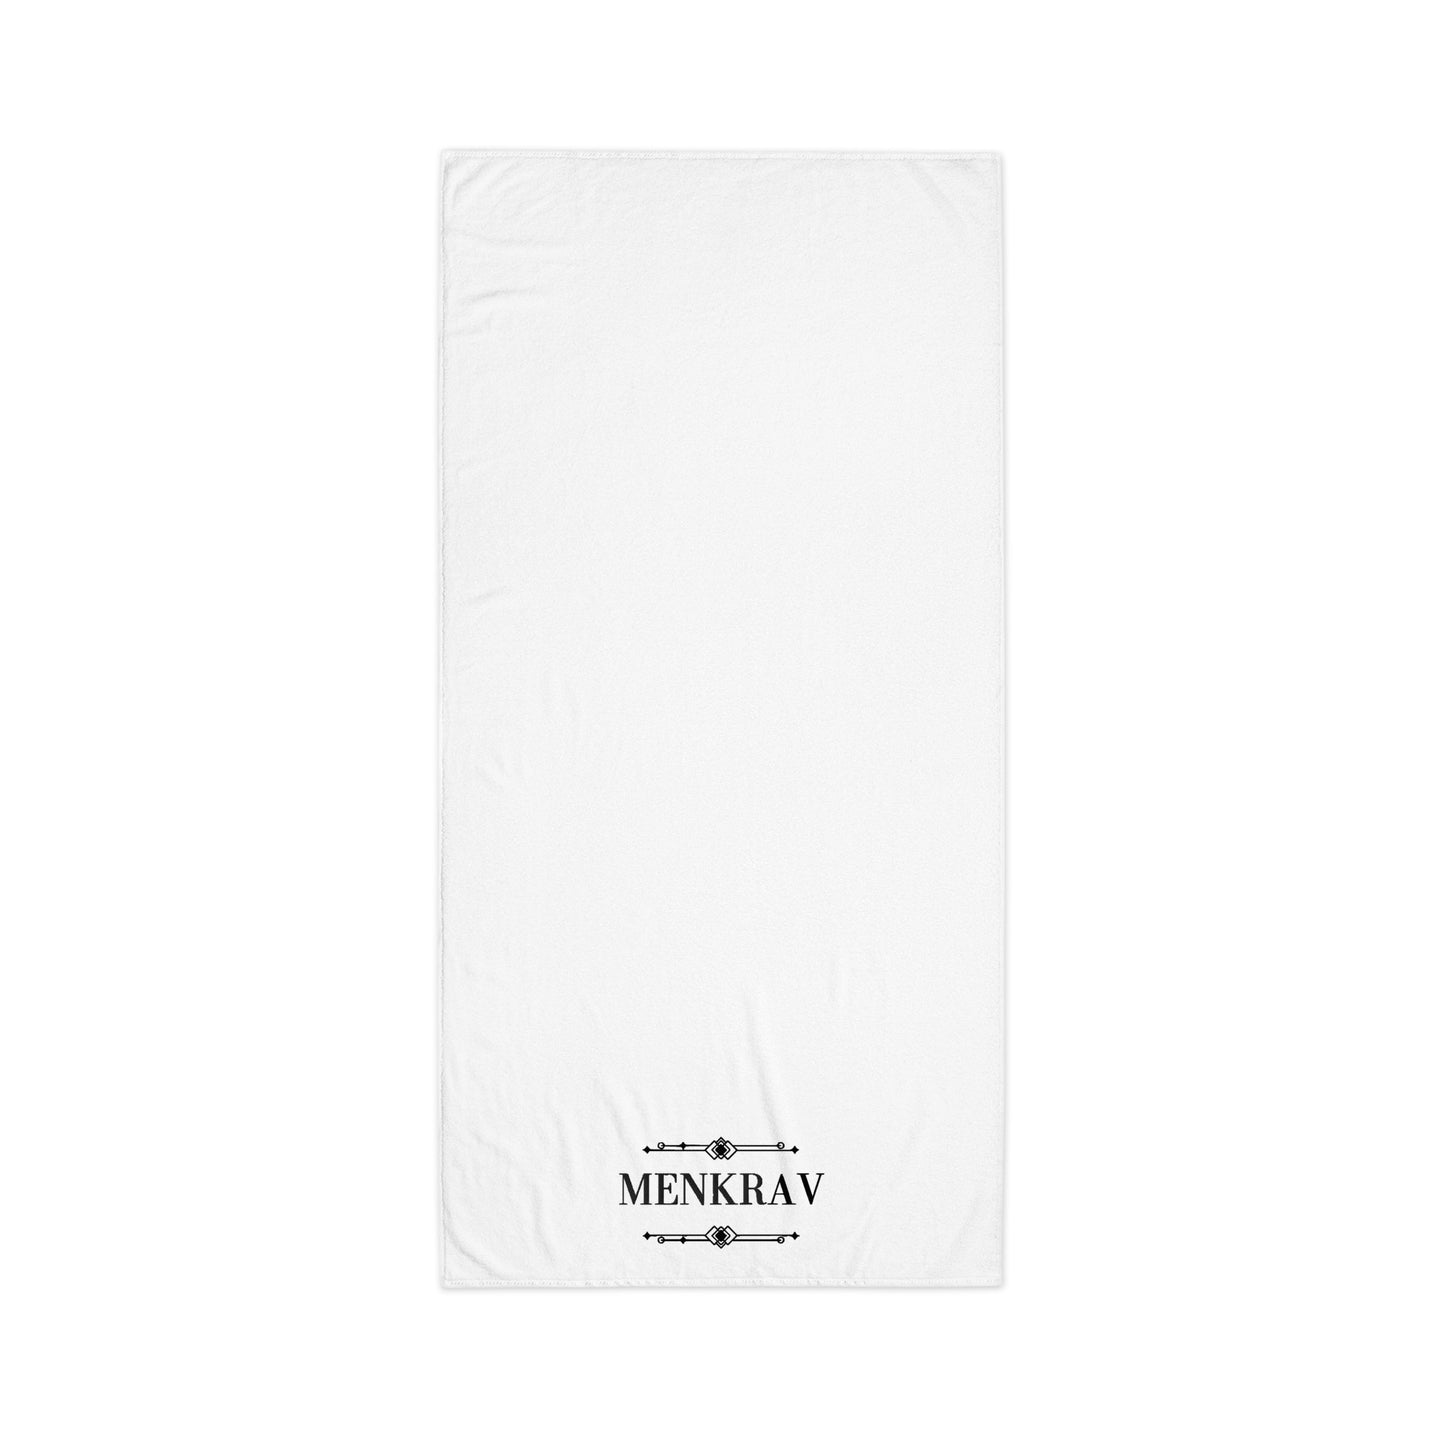 Menkrav Initiate towel white